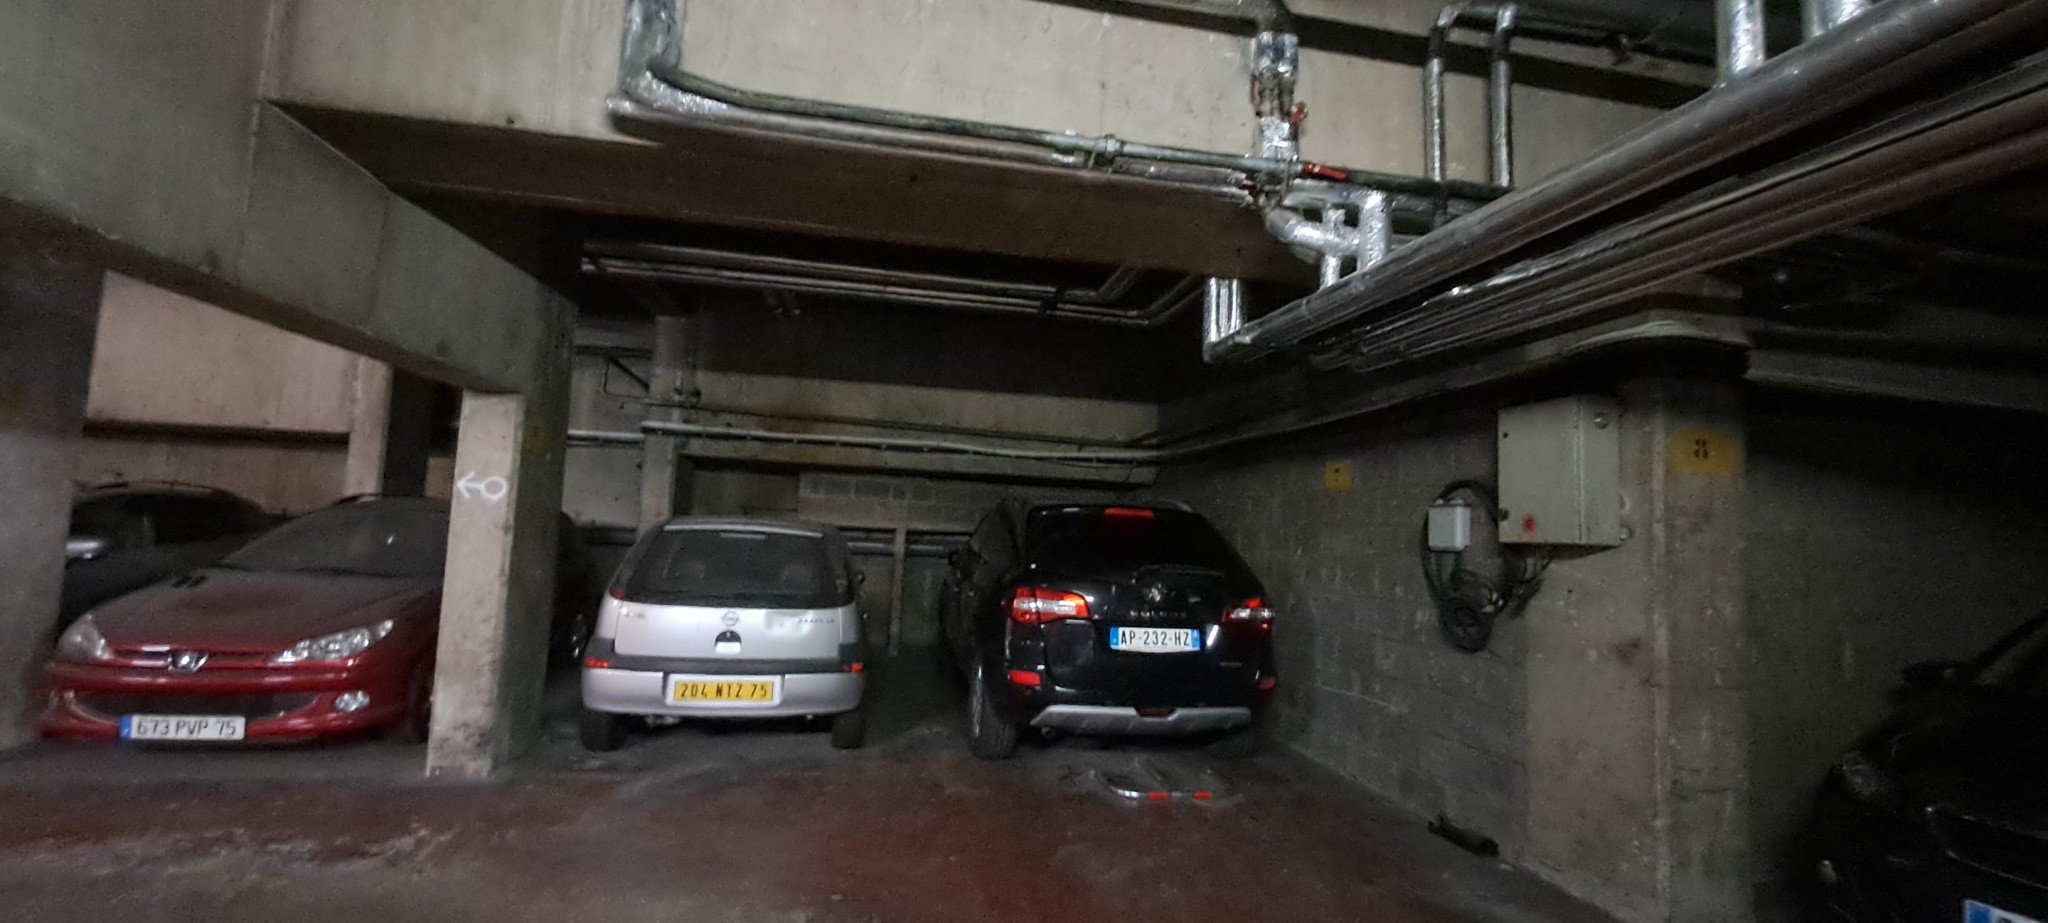 Vente Garage / Parking à Paris Butte-Montmartre 18e arrondissement 0 pièce